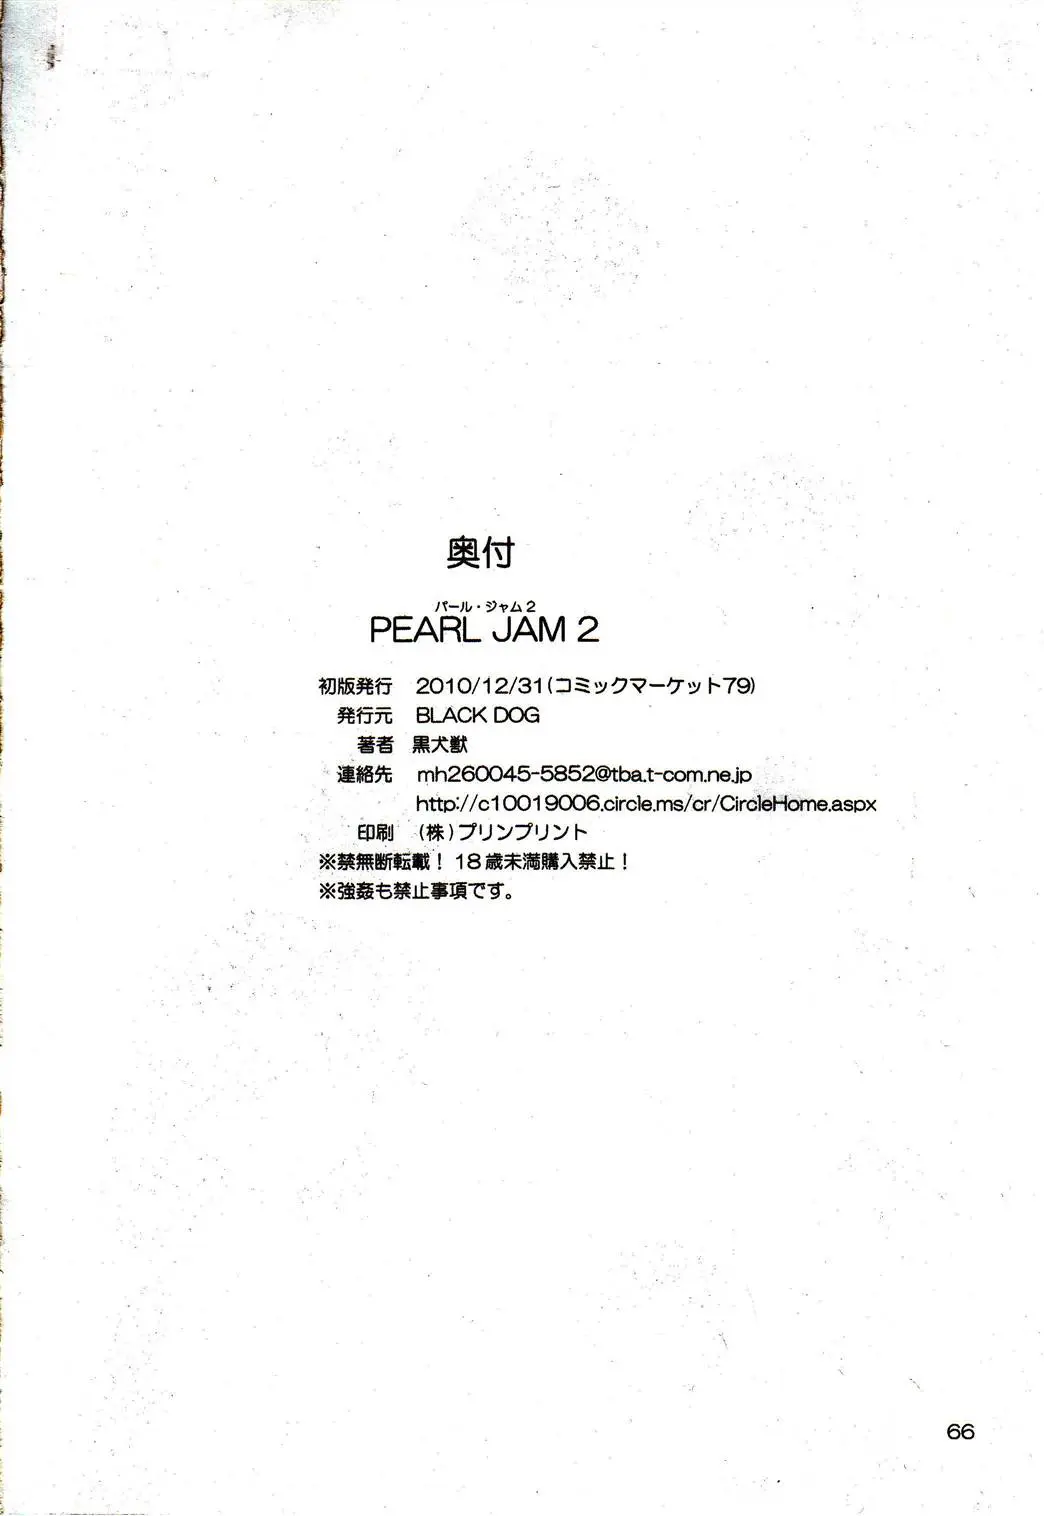 Pearl Jam 2